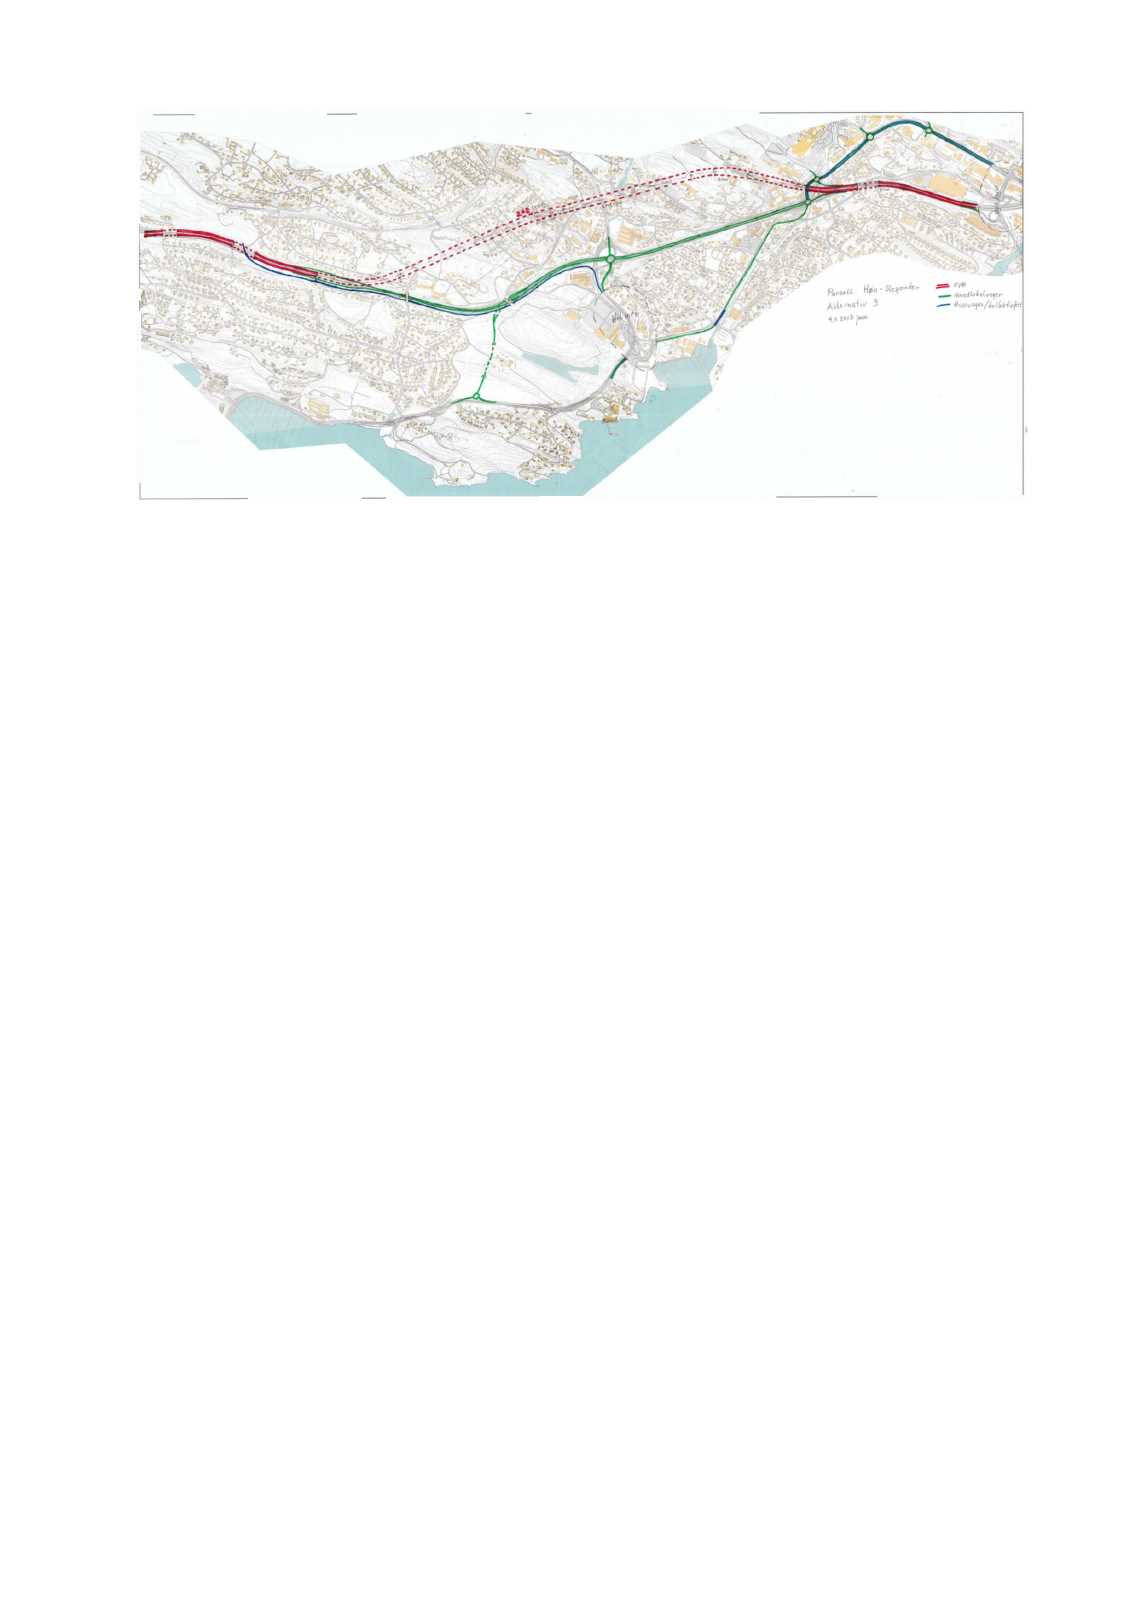 Side11 av 11 Alternativ 2.3: Ny E18i tunnelhaga-nesbru(cirka 2,7 km) og miljølokk vedholmenkirke, ny lokalvei delvisi dagense18-trase,separatløsningfor buss(ulike varianterskalvurderes).